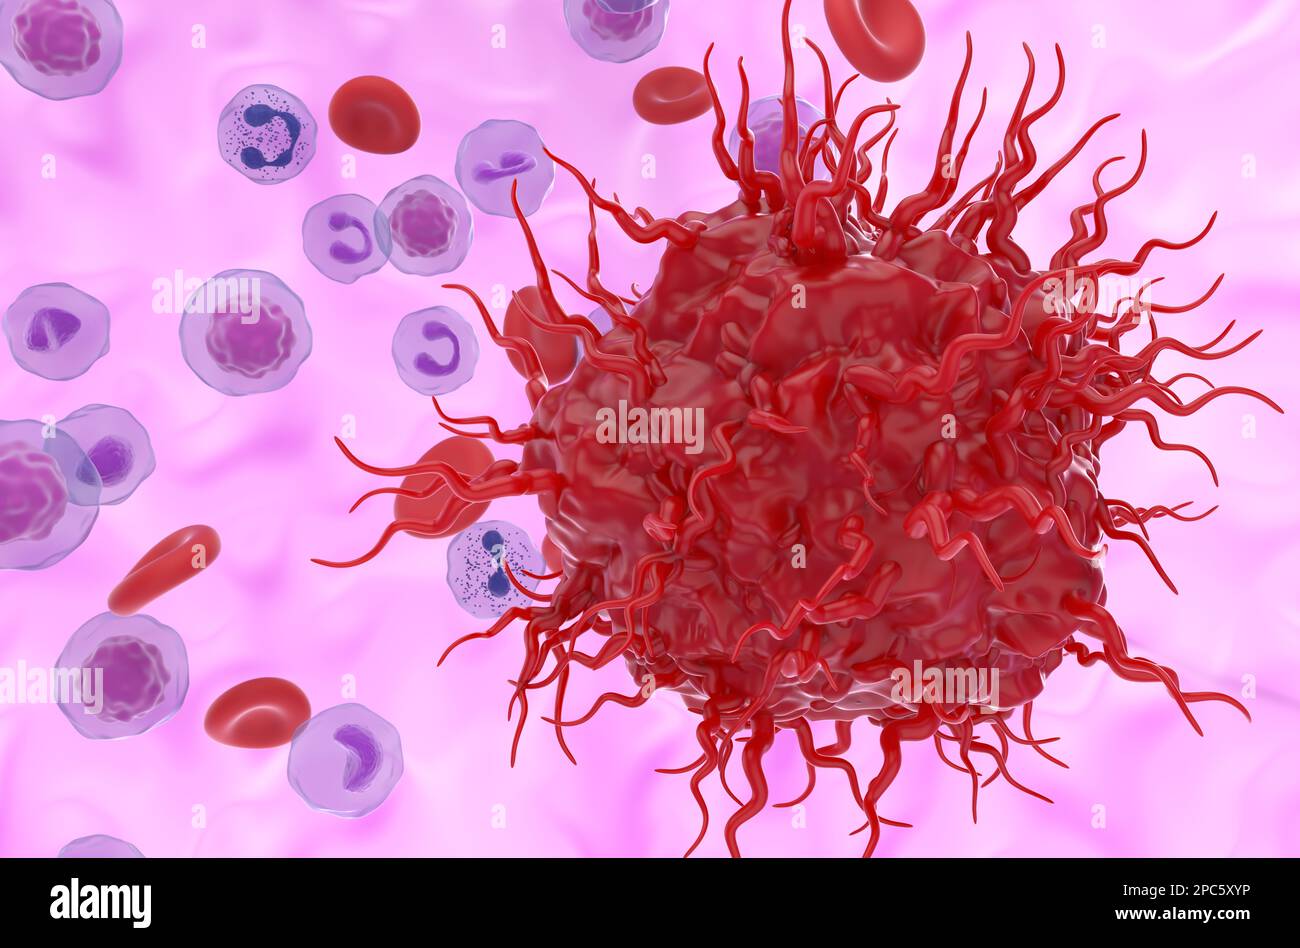 Cellule tumorale neuroendocrine métastatique dans le flux sanguin - 3D illustration vue rapprochée Banque D'Images